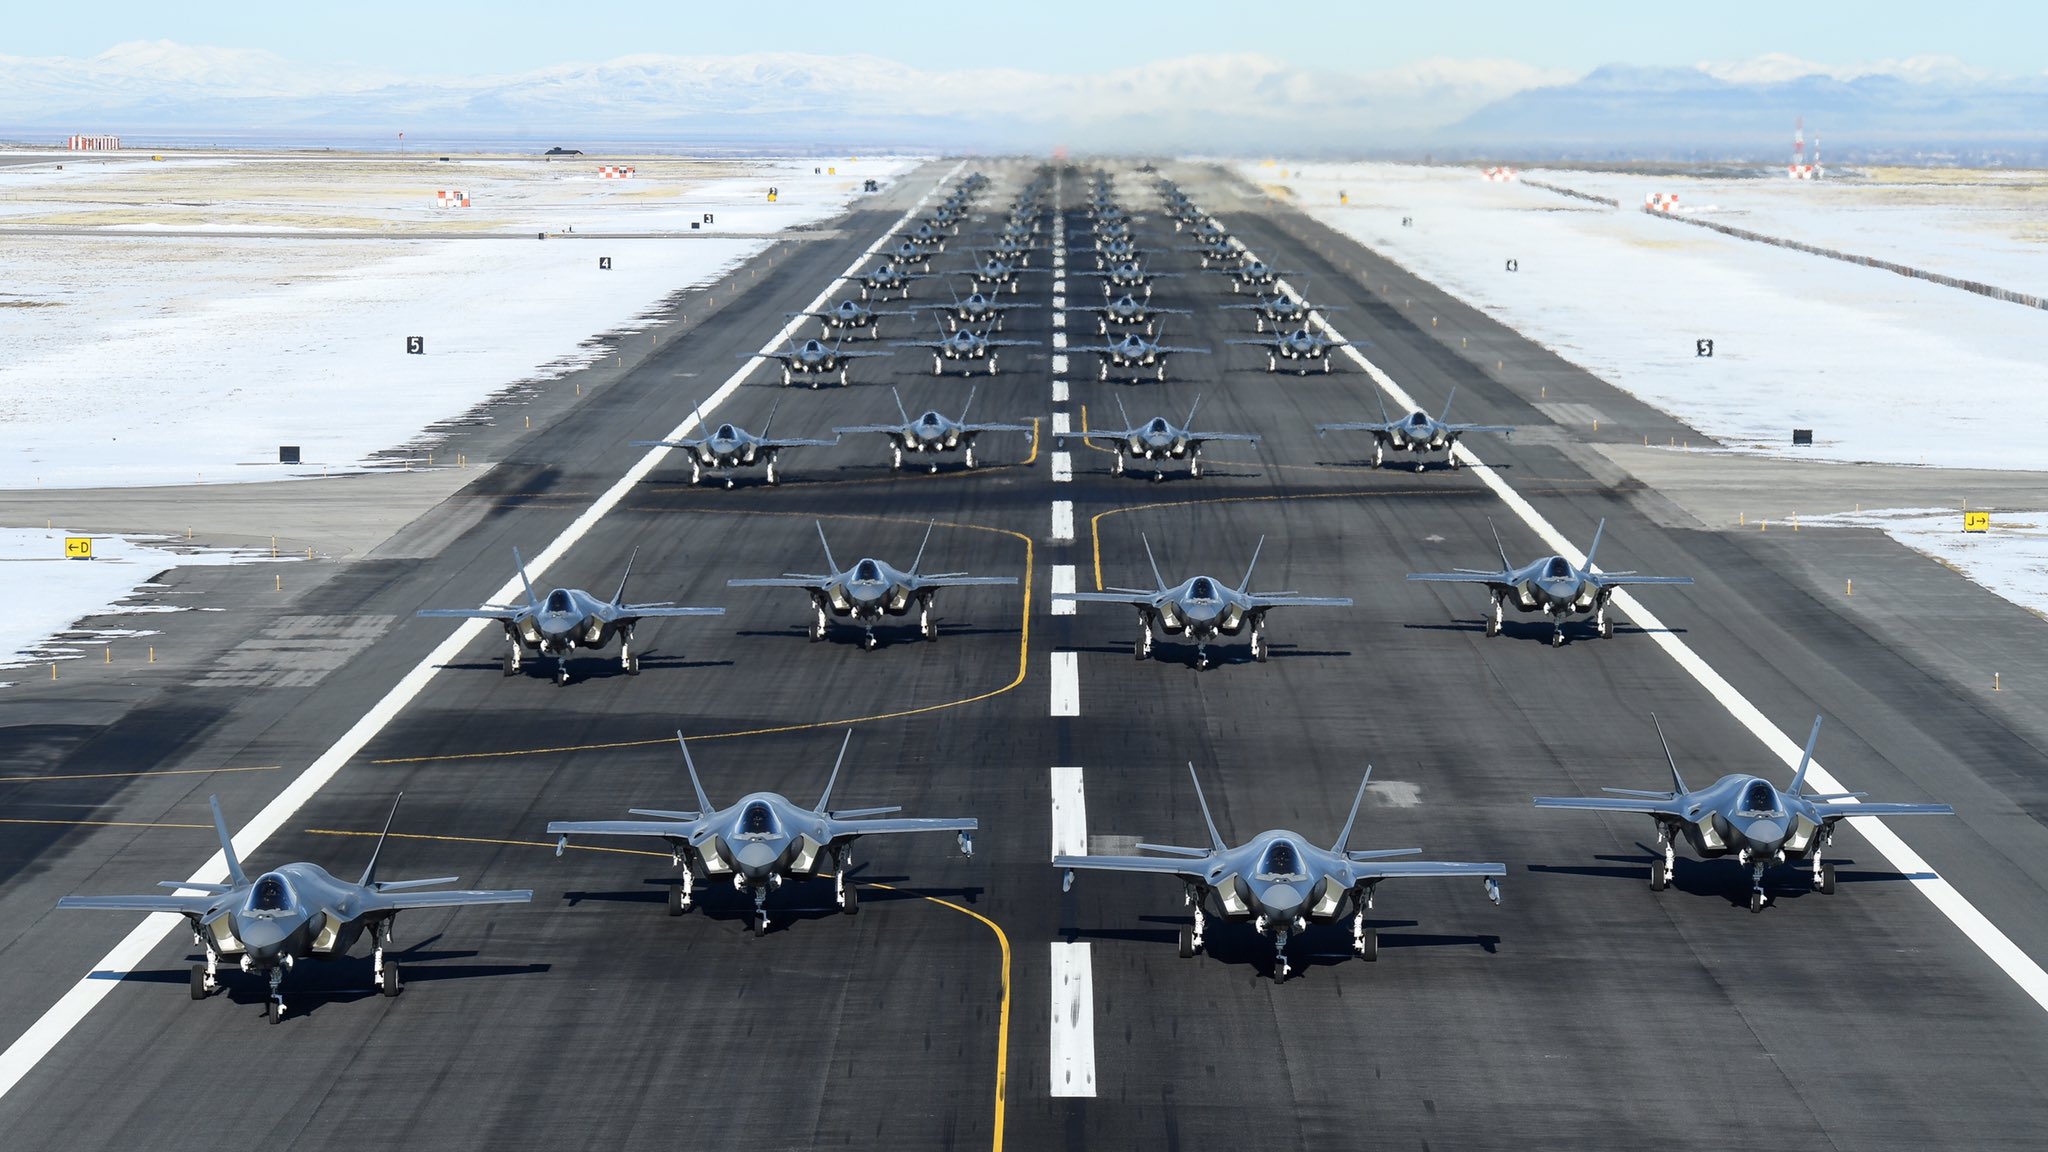 52 מטוסי F-35 מסודרים לקראת תרגיל השקה בבסיס חיל האוויר האמריקאי בגבעת יוטה, בהפגנת עוצמה ומוכנות לקרב על רקע המתיחות בין ארצות הברית לאיראן, 6 בינואר 2020 (צילום: חיל האוויר האמריקאי/ר&#039; ניל ברדשאו/צילום מסך מטוויטר)